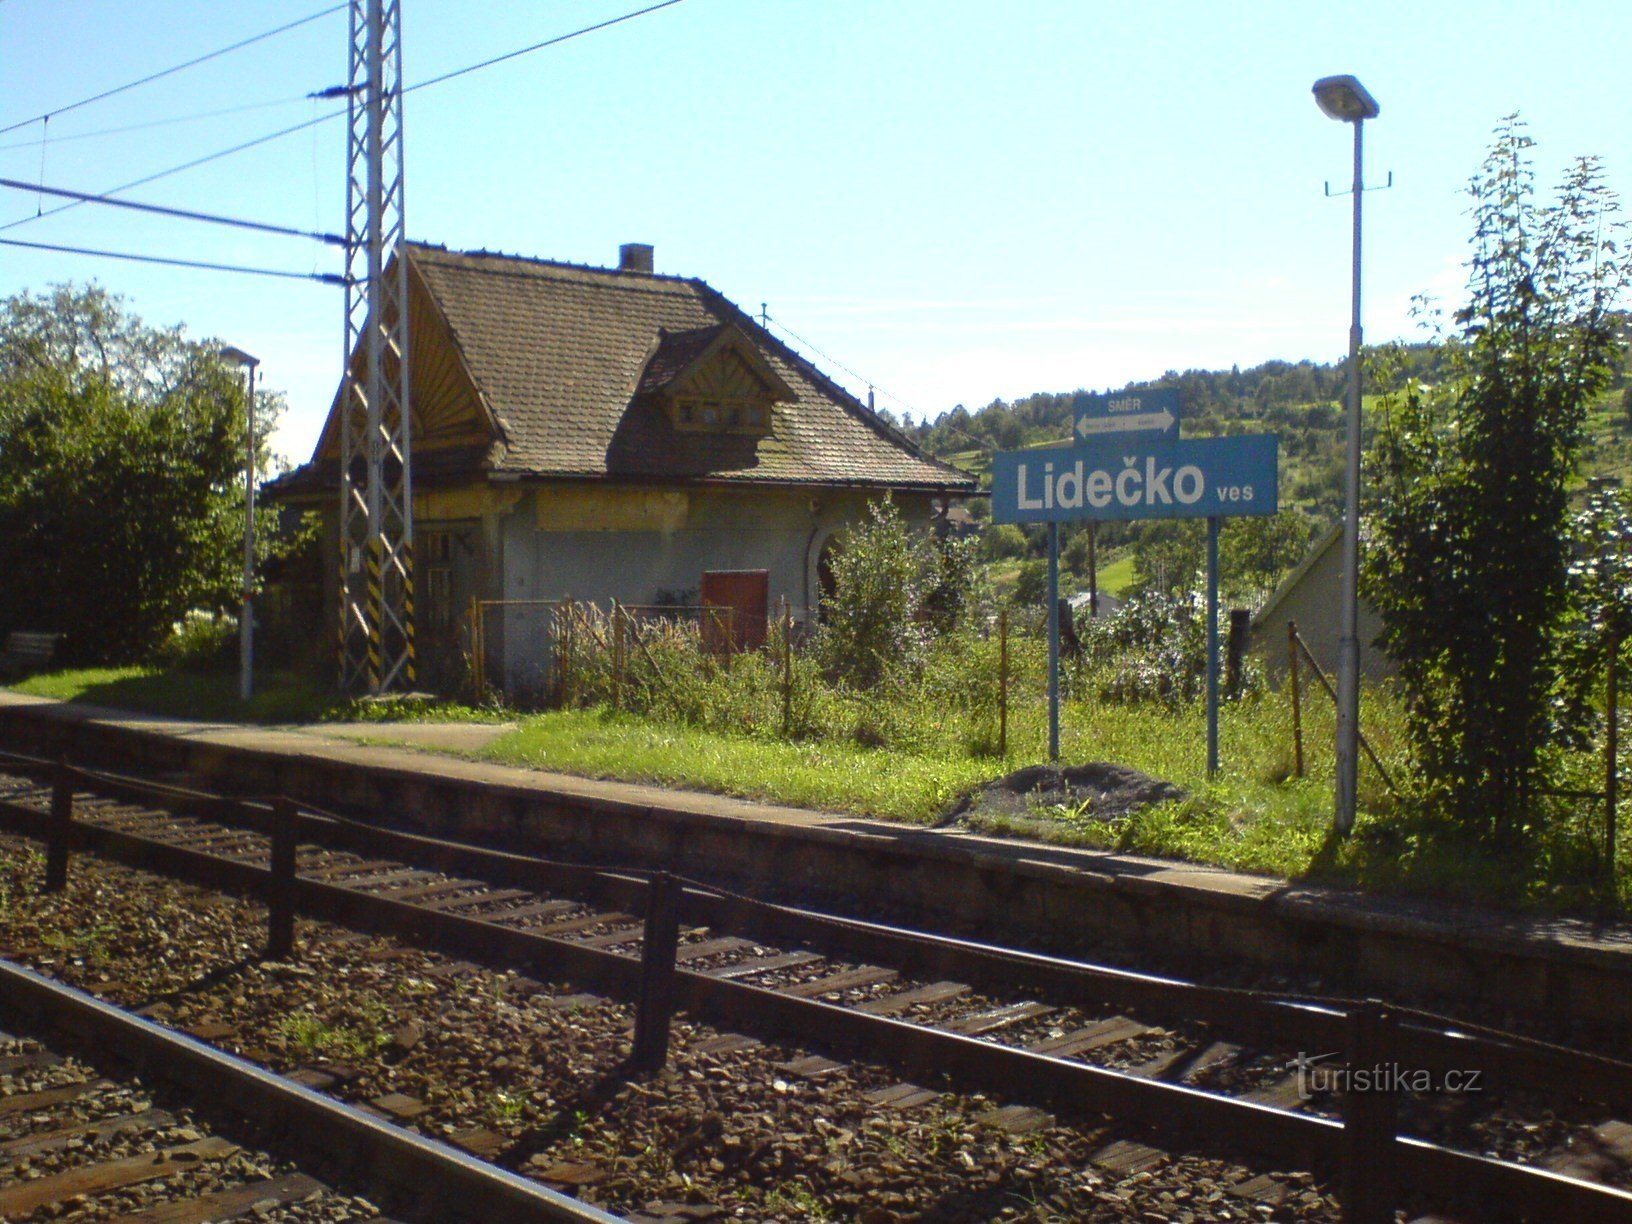 Lidečko naselje - železniška postaja